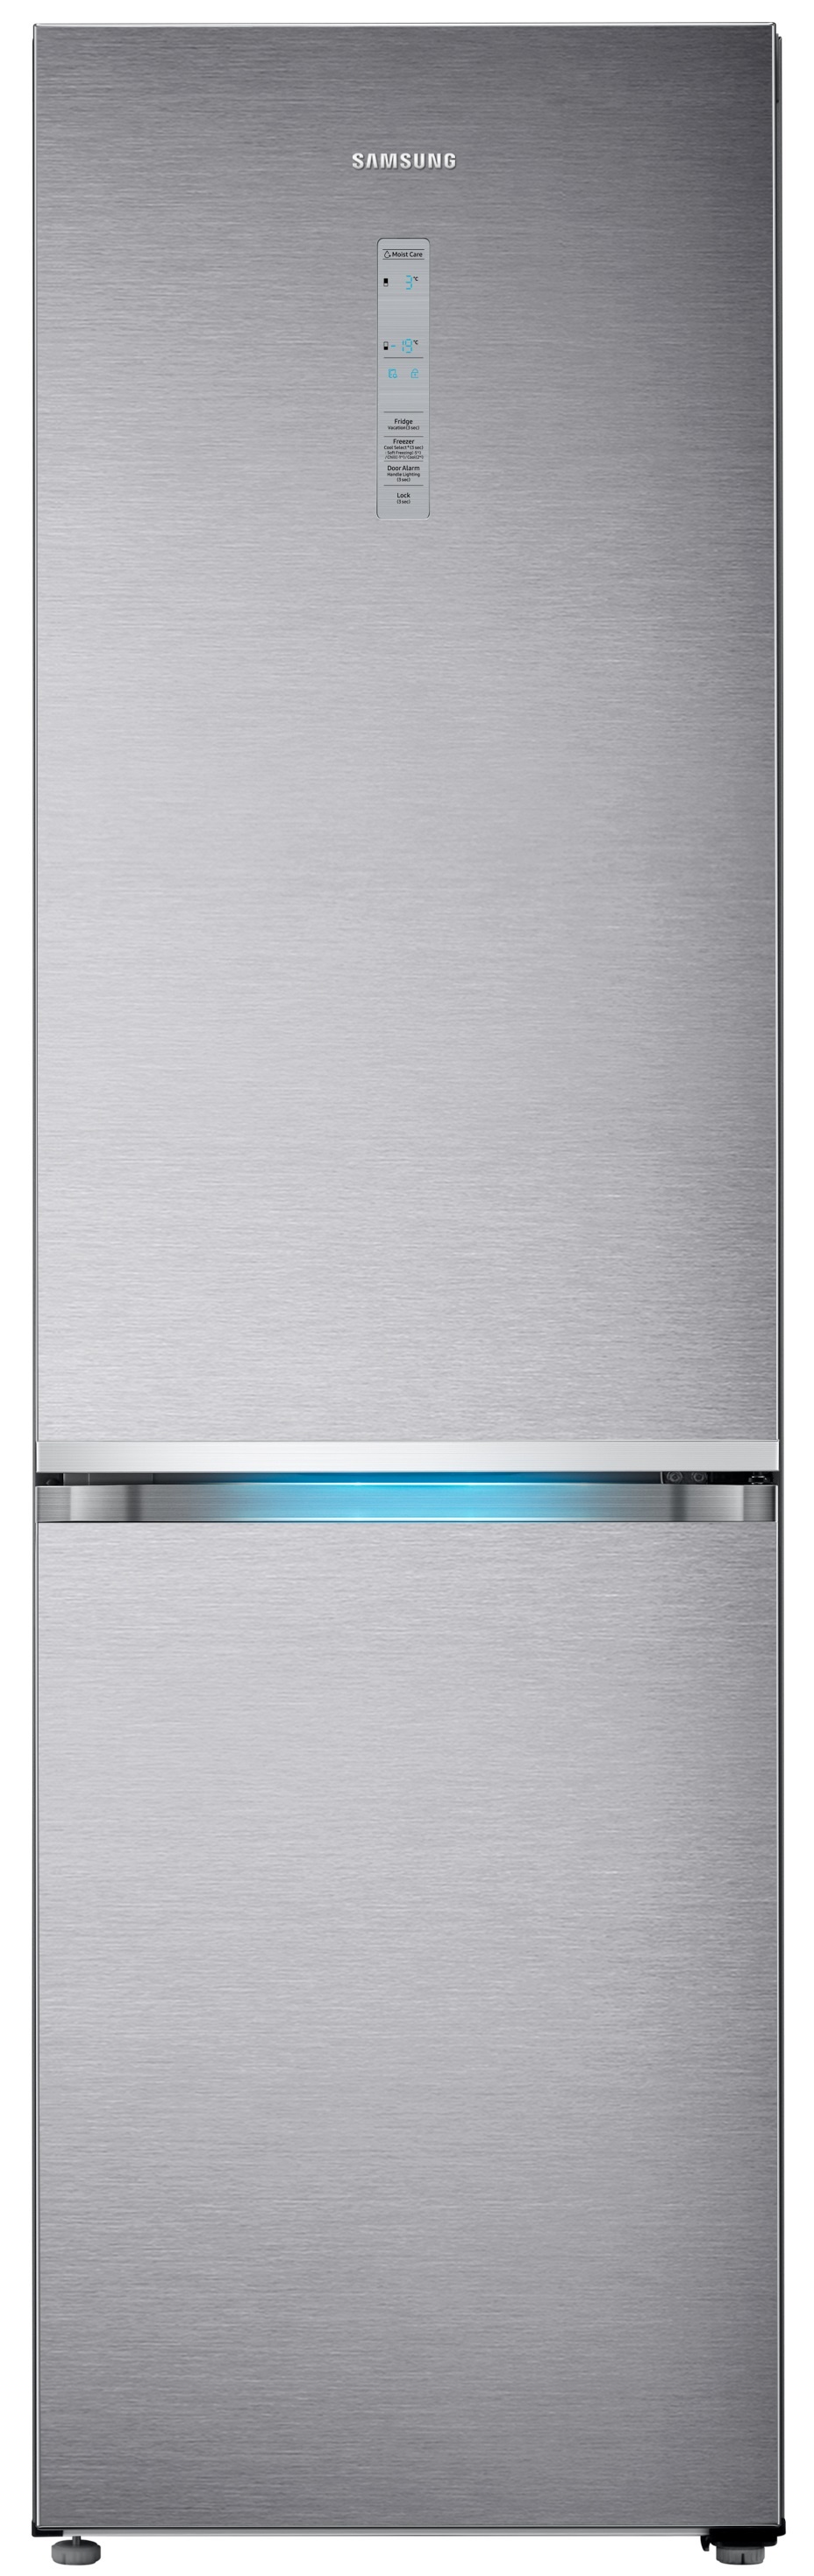 Акция на Холодильник SAMSUNG RB41R7847SR/UA от Eldorado